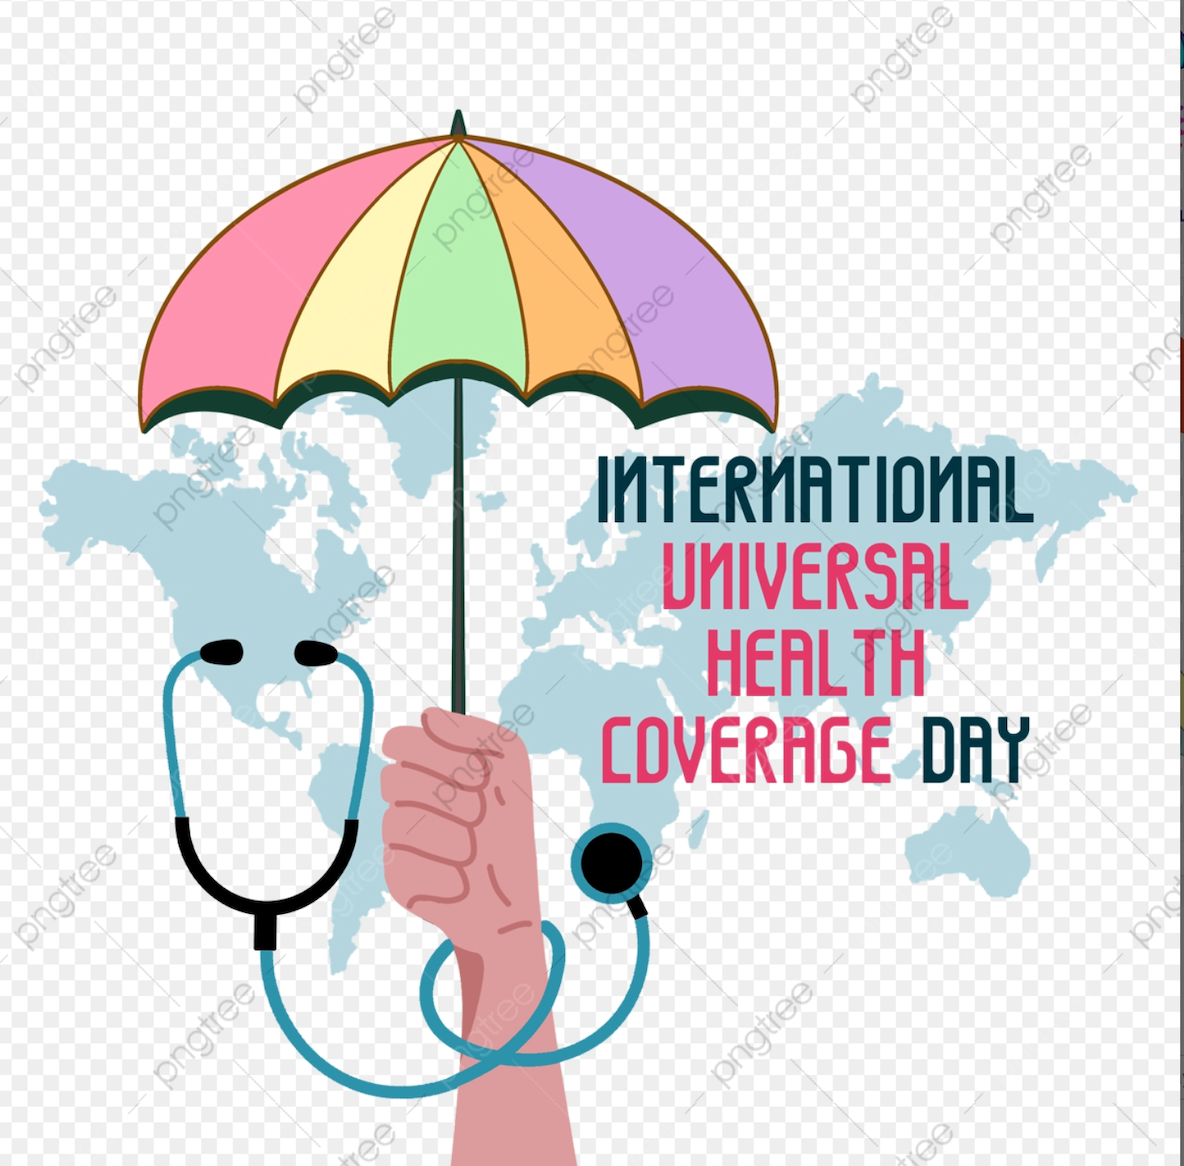 Сомали празднует День всеобщего охвата услугами здравоохранения: воплощение мечты о "здоровье для всех" в реальность